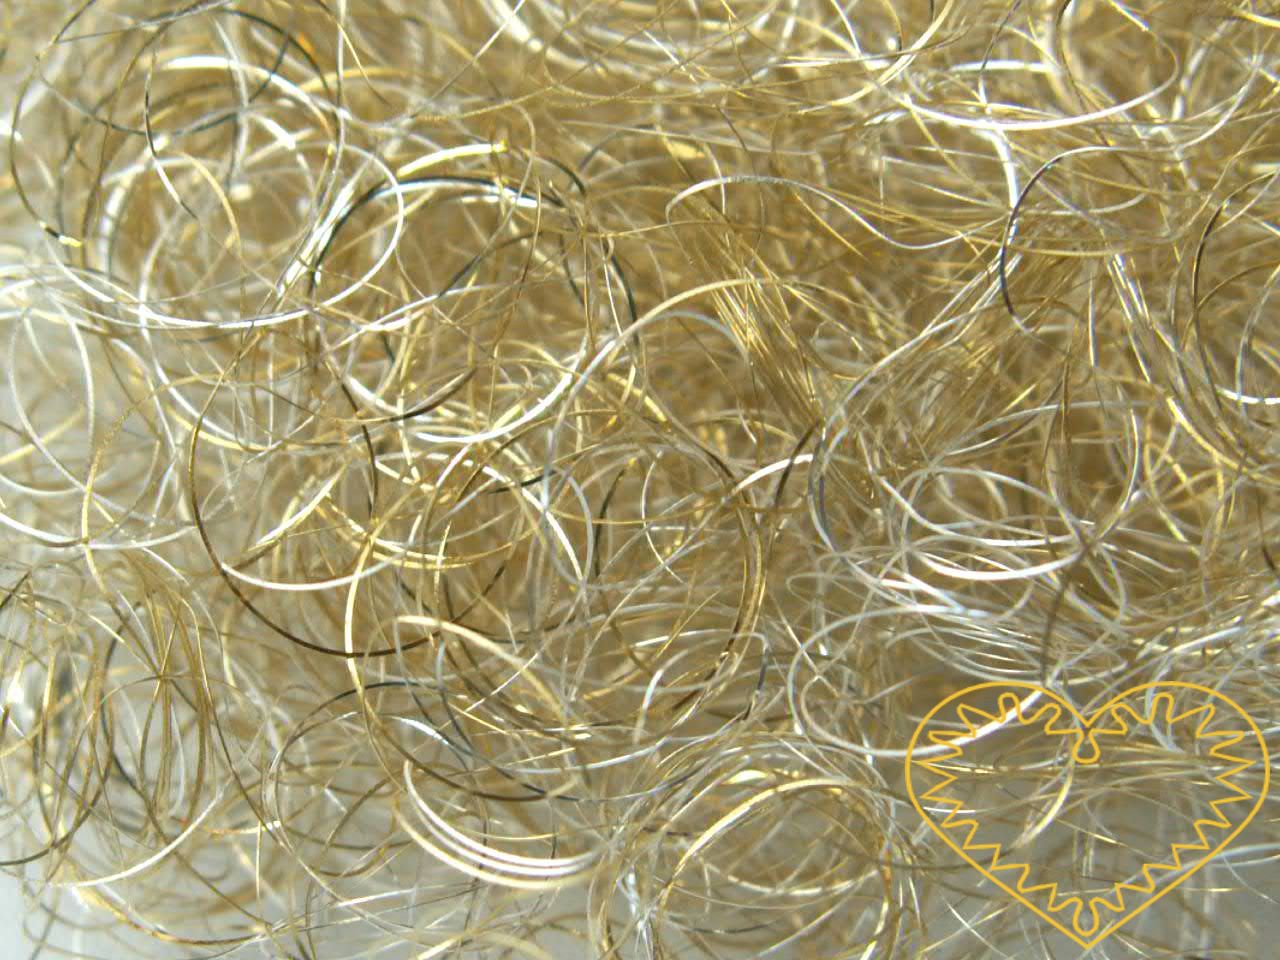 Andělské vlasy zlaté - baroko; velké balení 200 g. Andělské vlasy mají široké využití - uplatní se při aranžování, tvorbě nejrůznějších dekorací, ale např. i jako vlásky na figurku či maňáska.